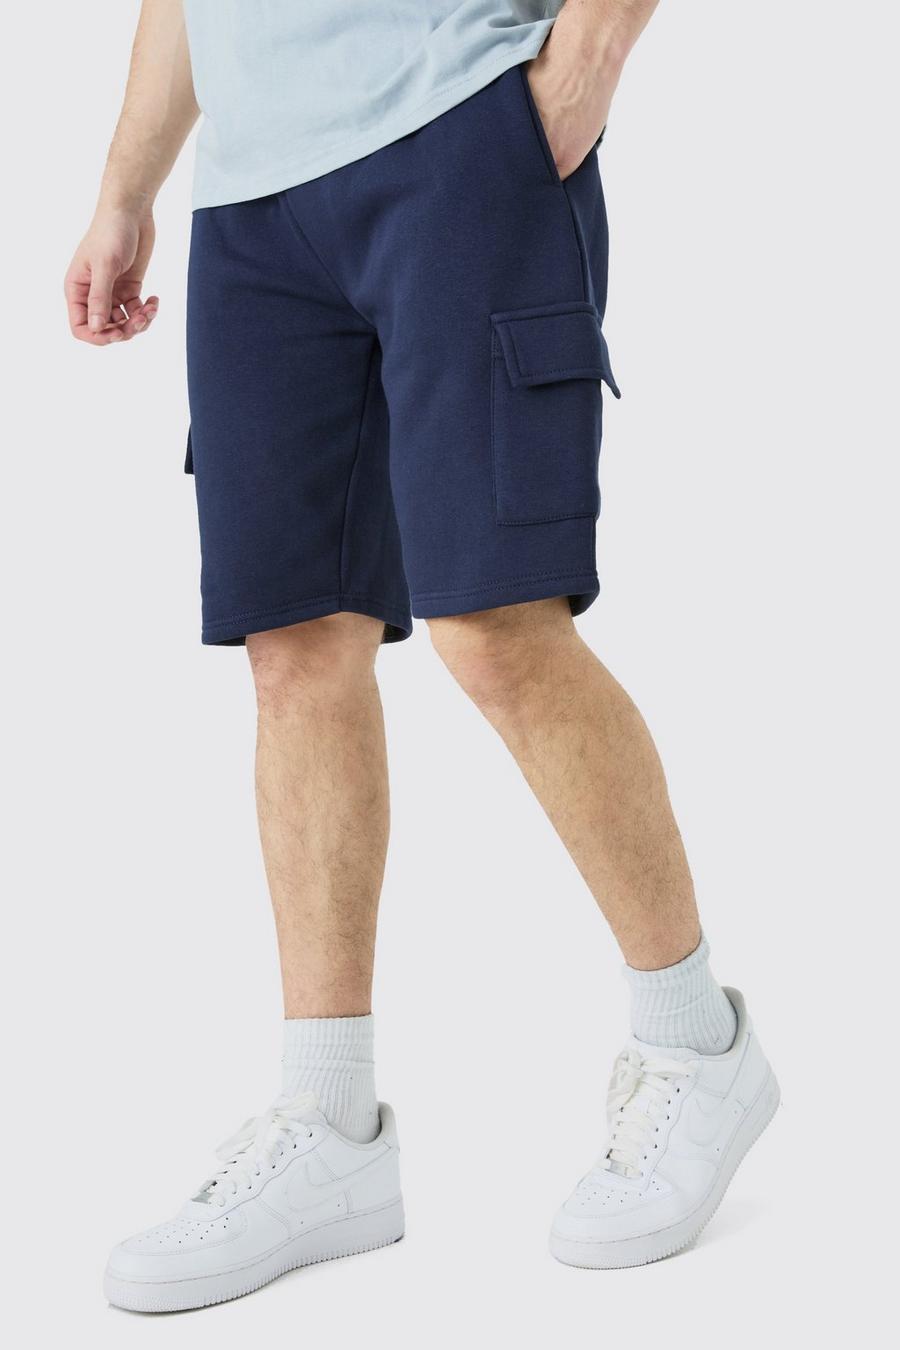 Pantalón corto Tall holgado cargo de tela jersey, Navy